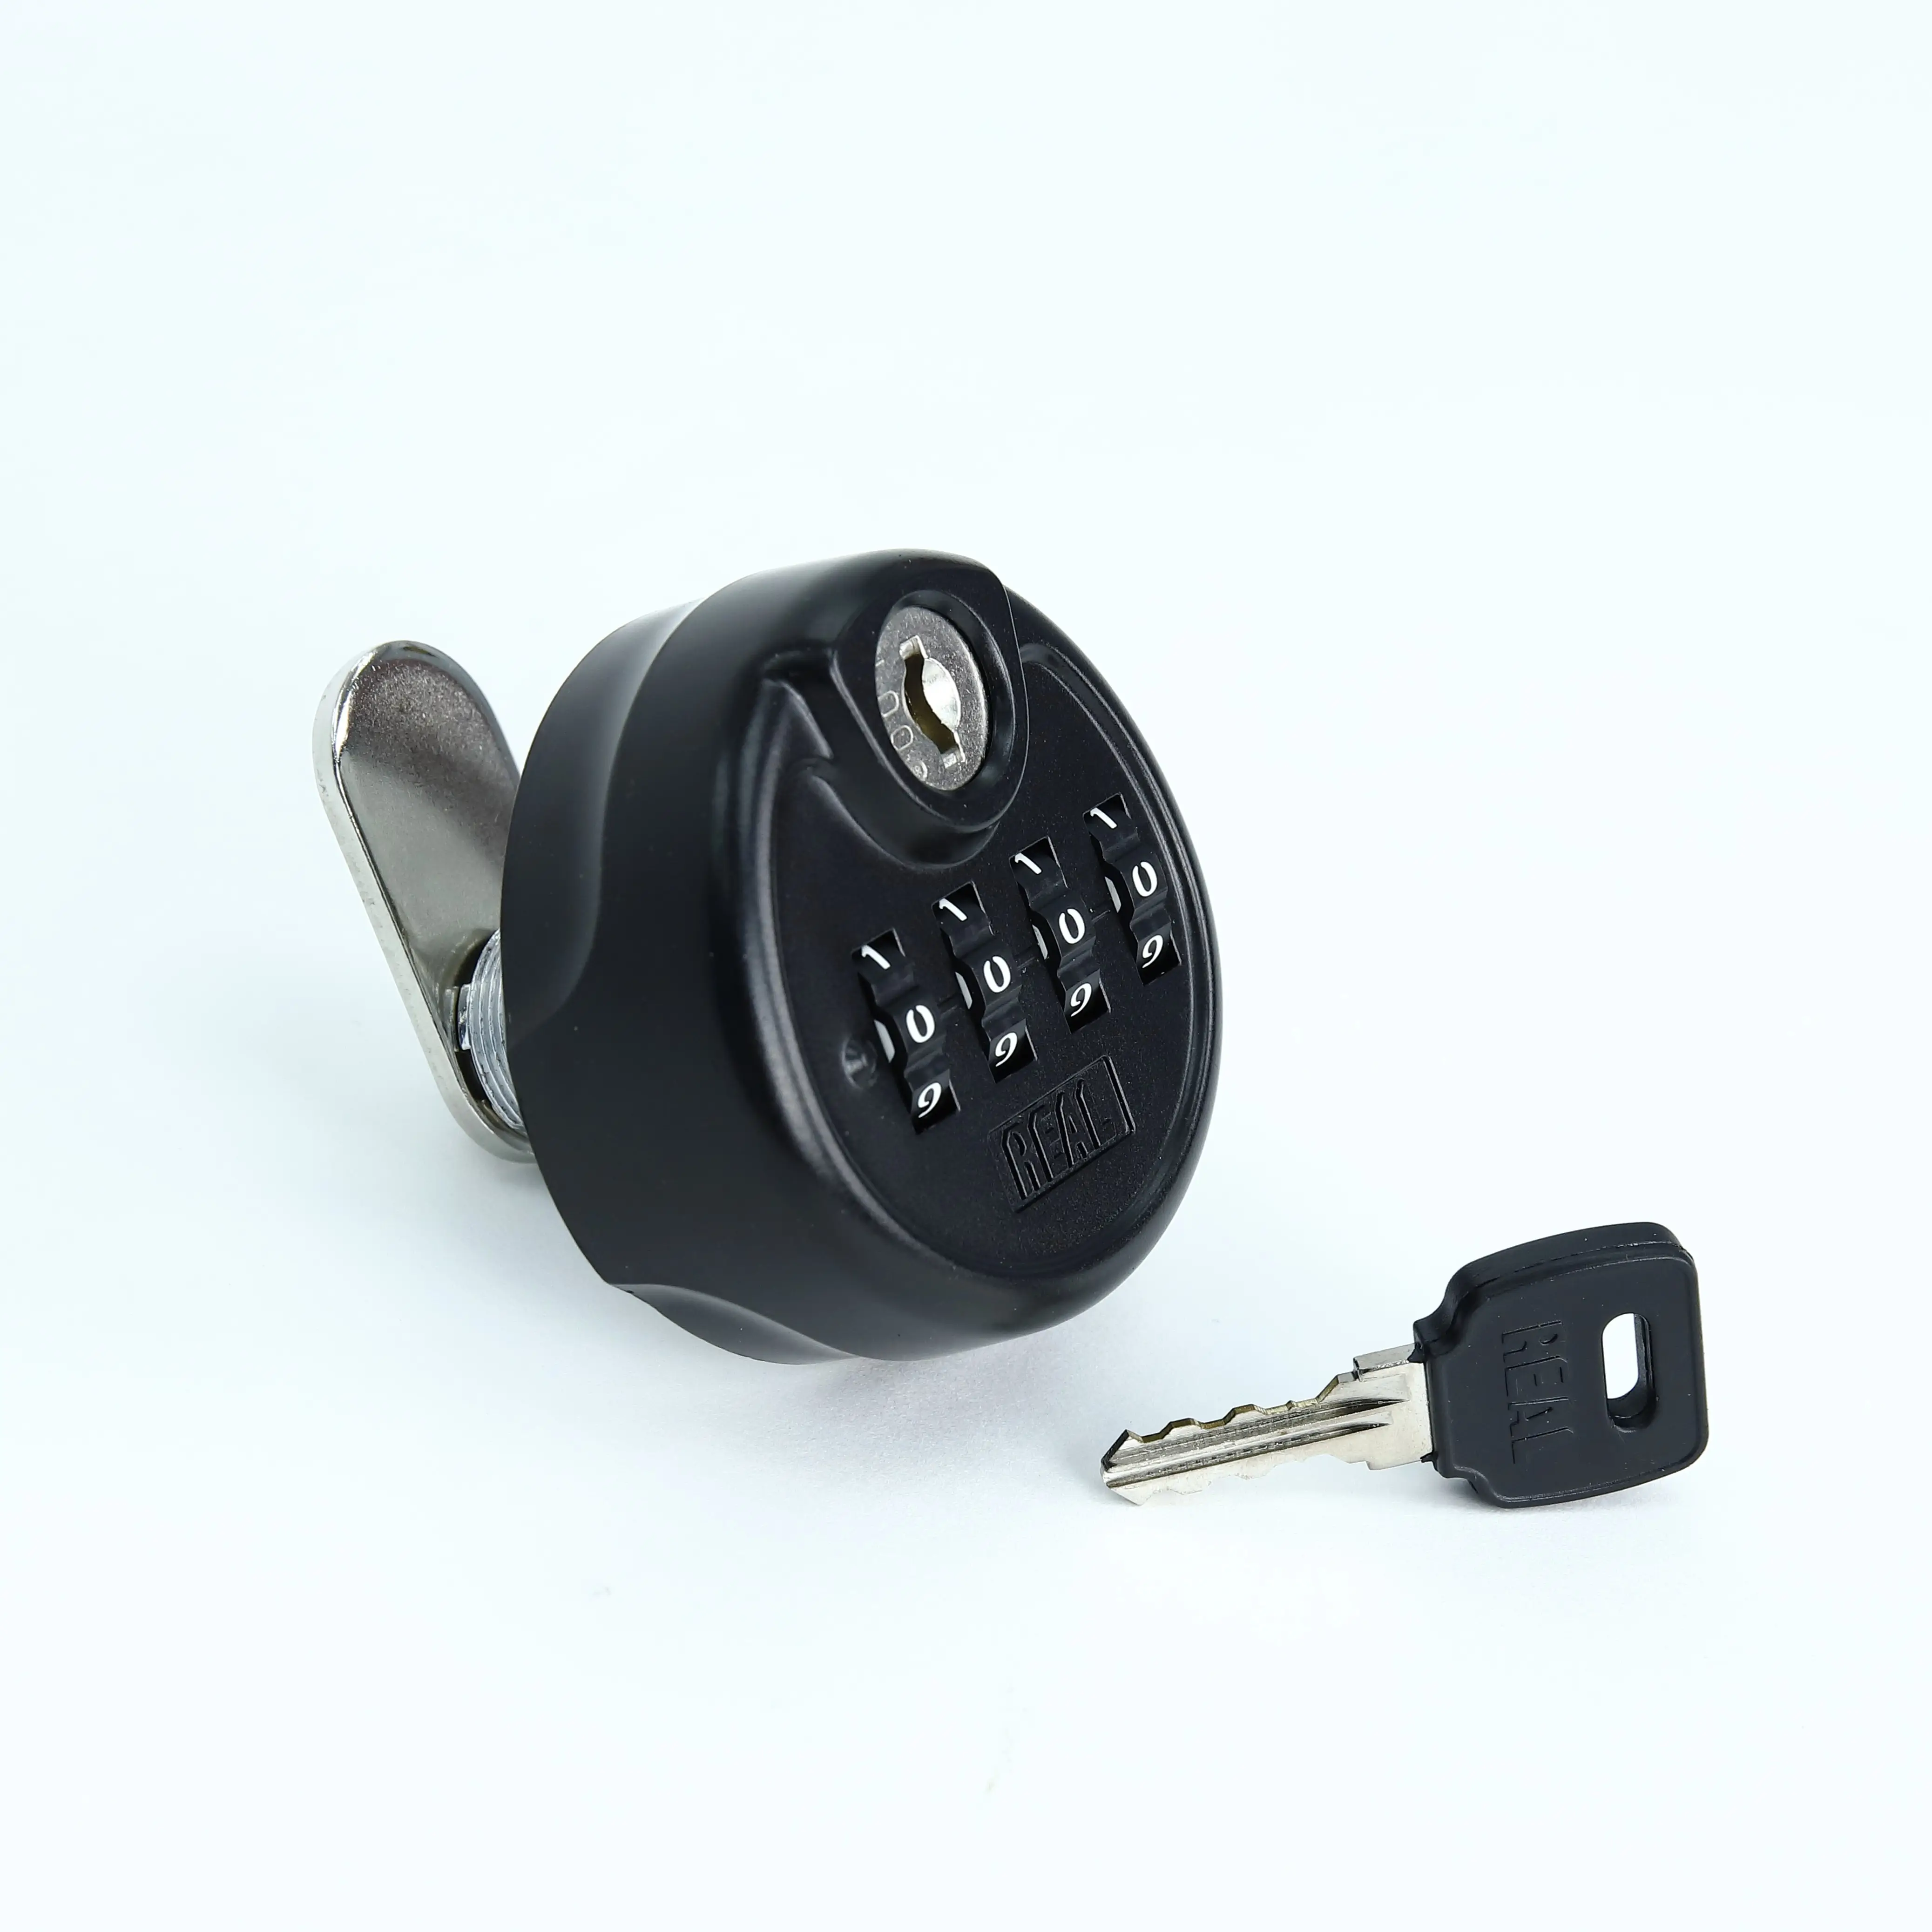 REAL RL-10347 Mechanische Sicherheit Rücksetzbare Keyless 4 Digital Combination Cam Lock mit Schlüssel für Cabinet Locker